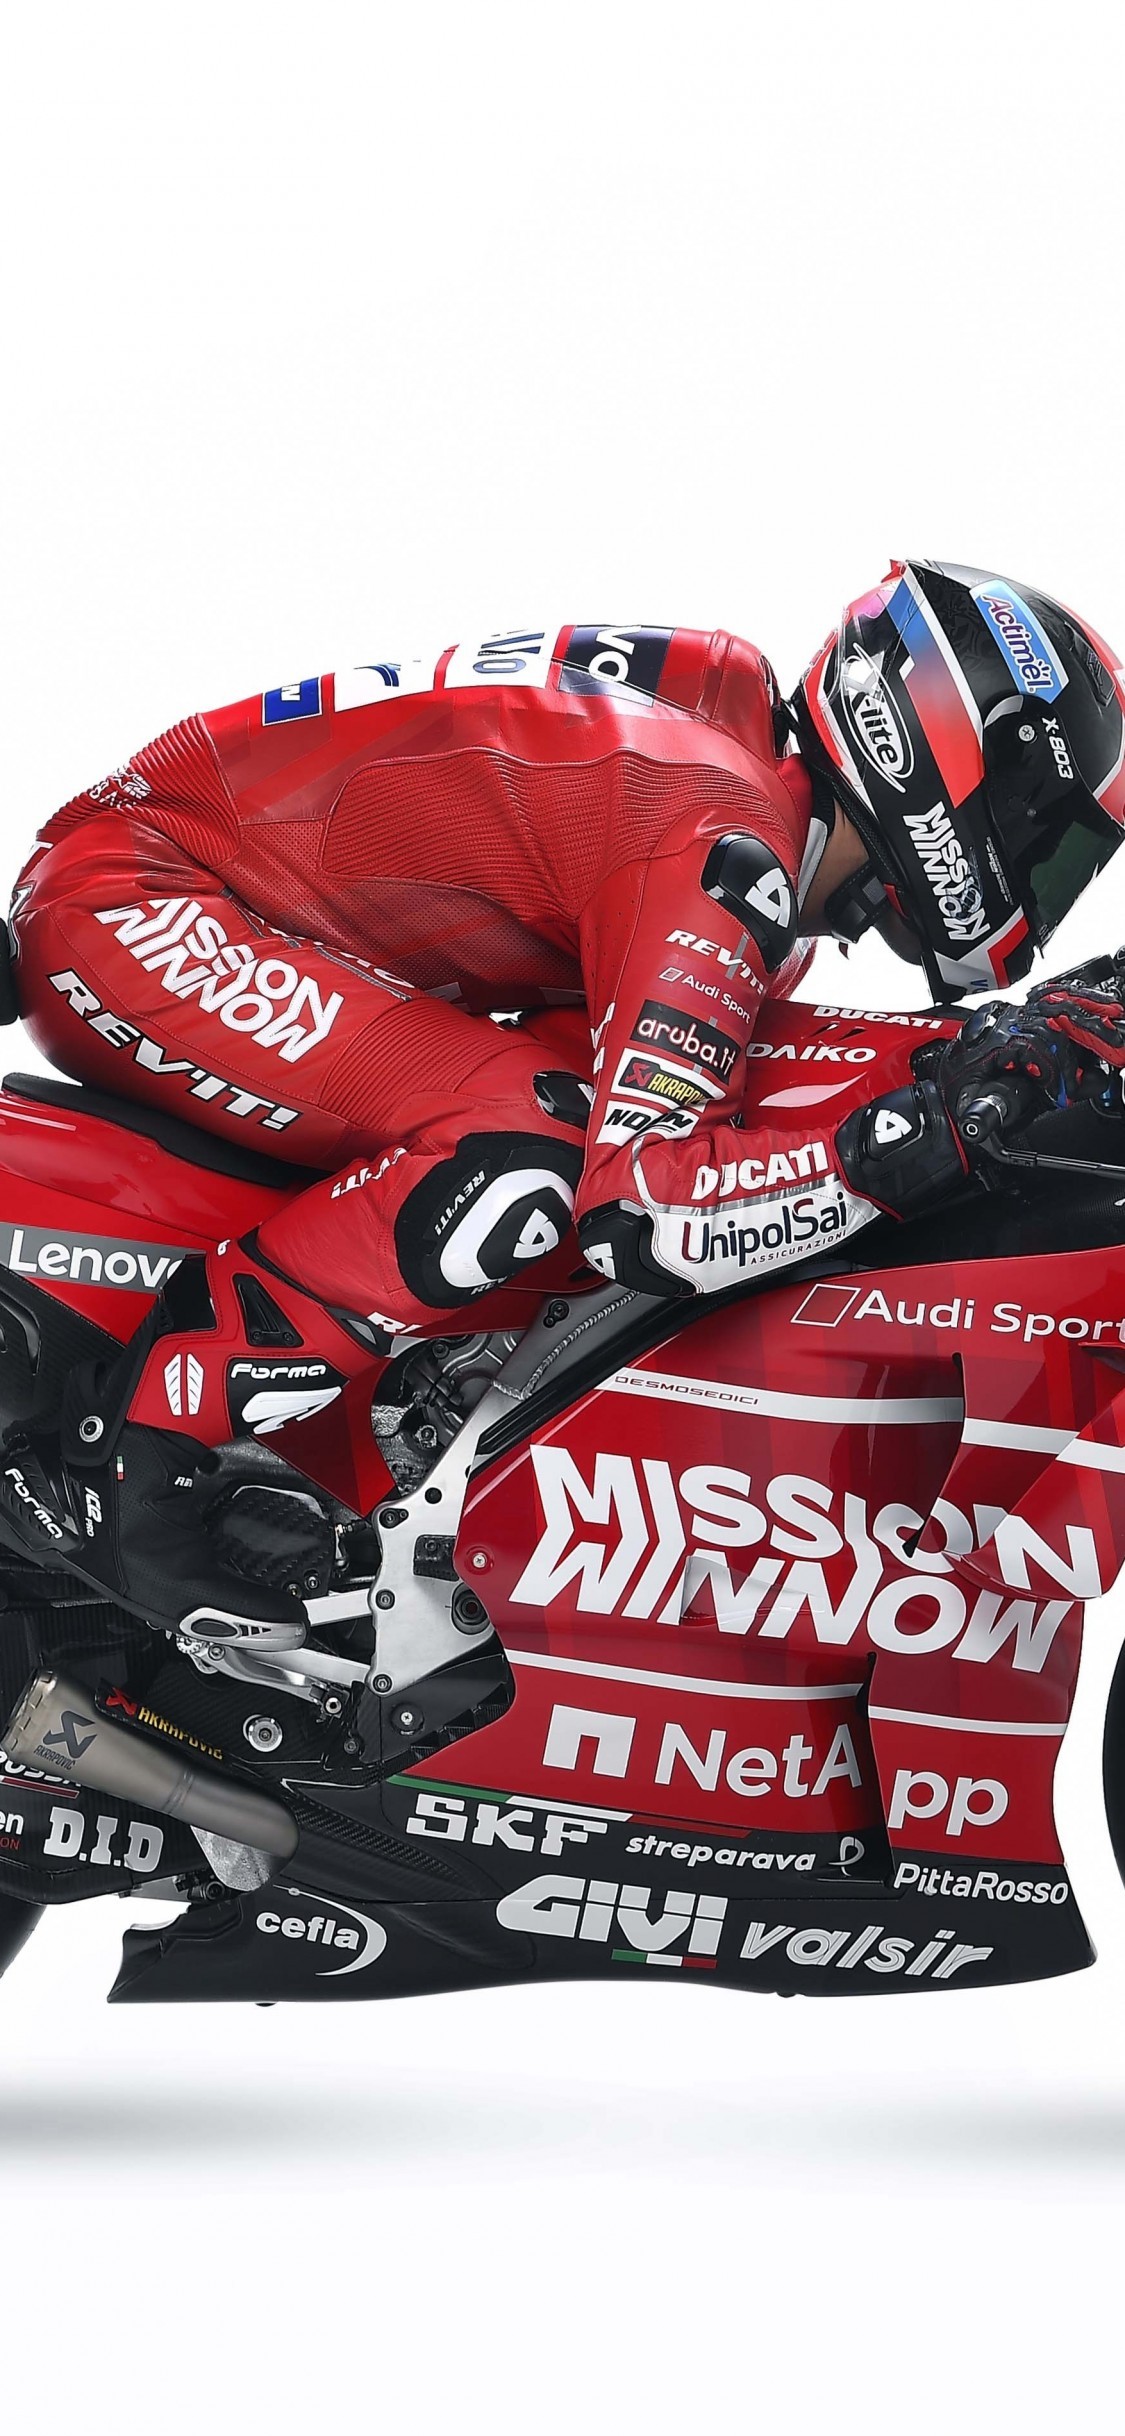 Motogp 2019, Ducati Desmosedici Gp19, Racing Motorcycle - Motogp Iphone Wallpaper Hd - HD Wallpaper 